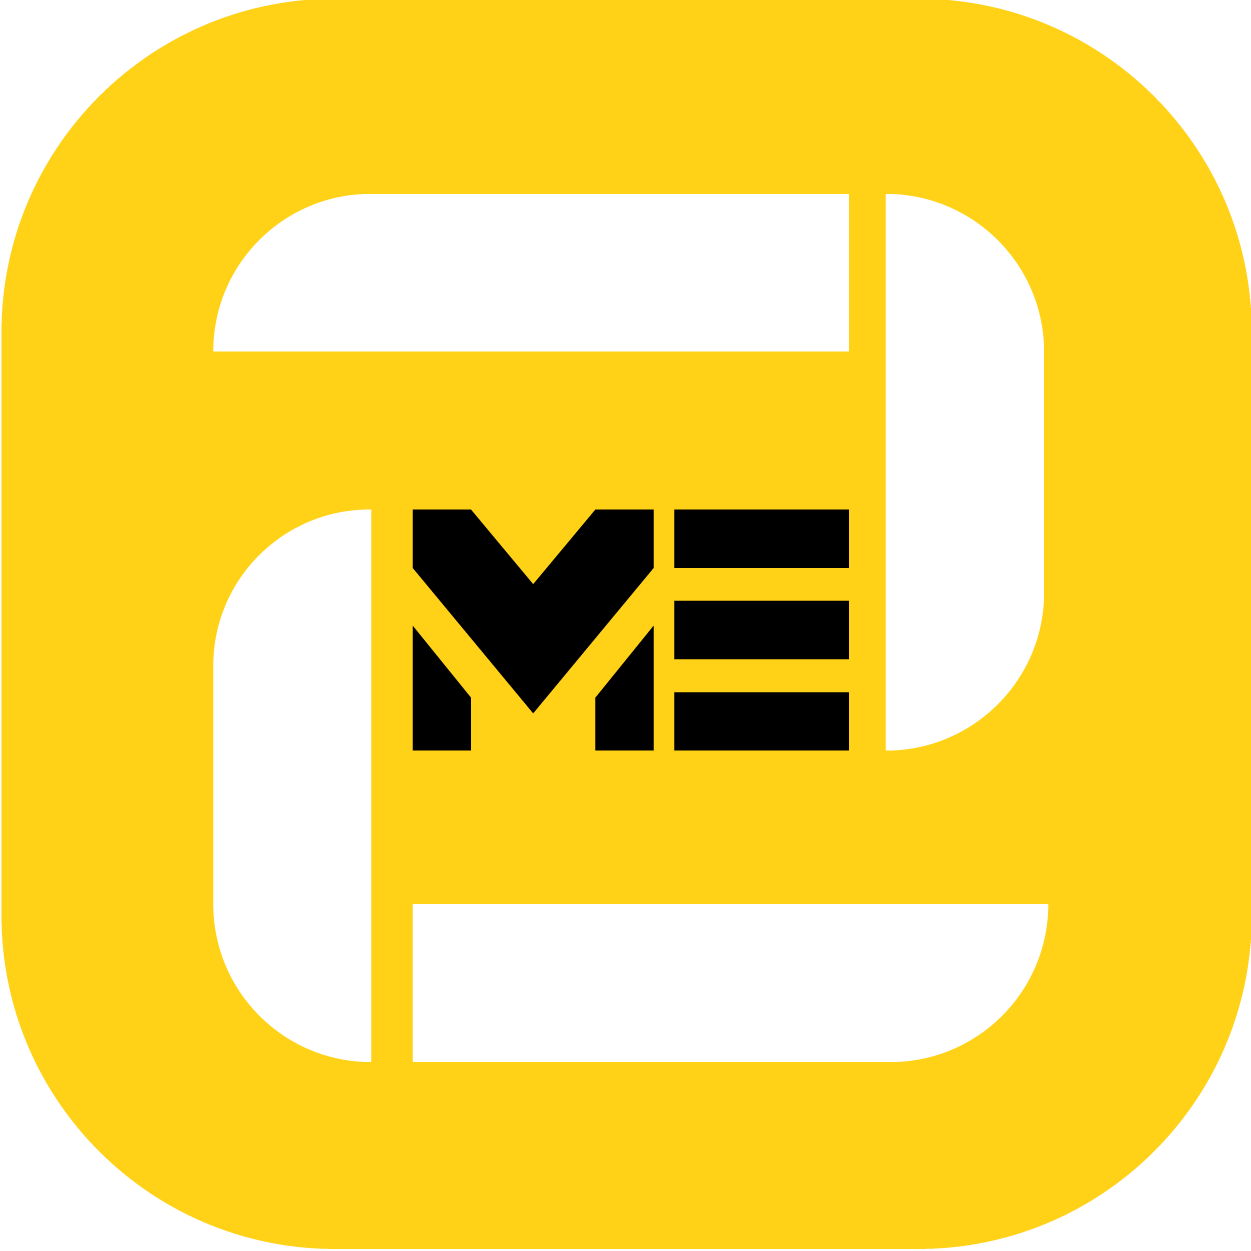 Logo Công ty Cổ phần Giải trí và Truyền thông 2Million - 2ME